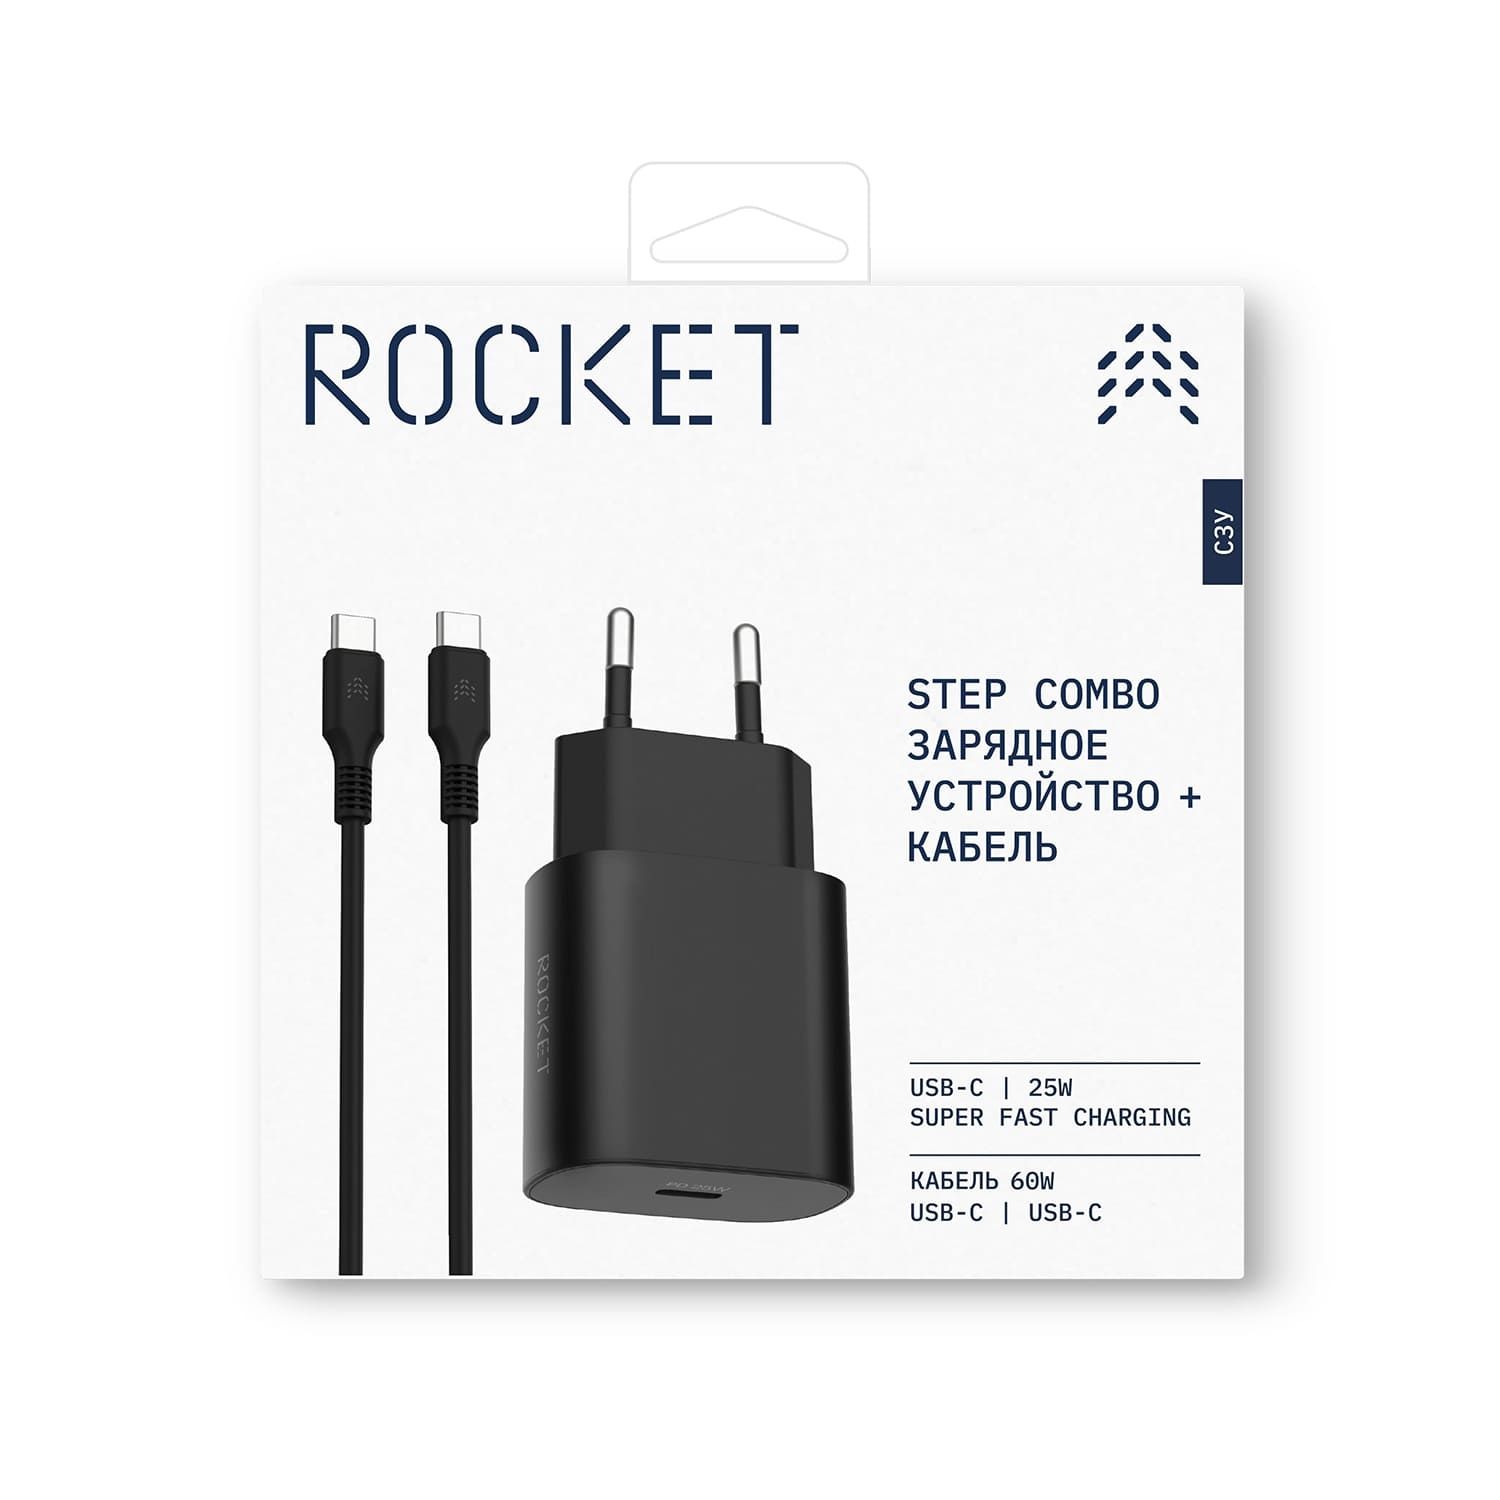 Сетевое ЗУ Rocket Step Combo + кабель USB-C/USB-C белый